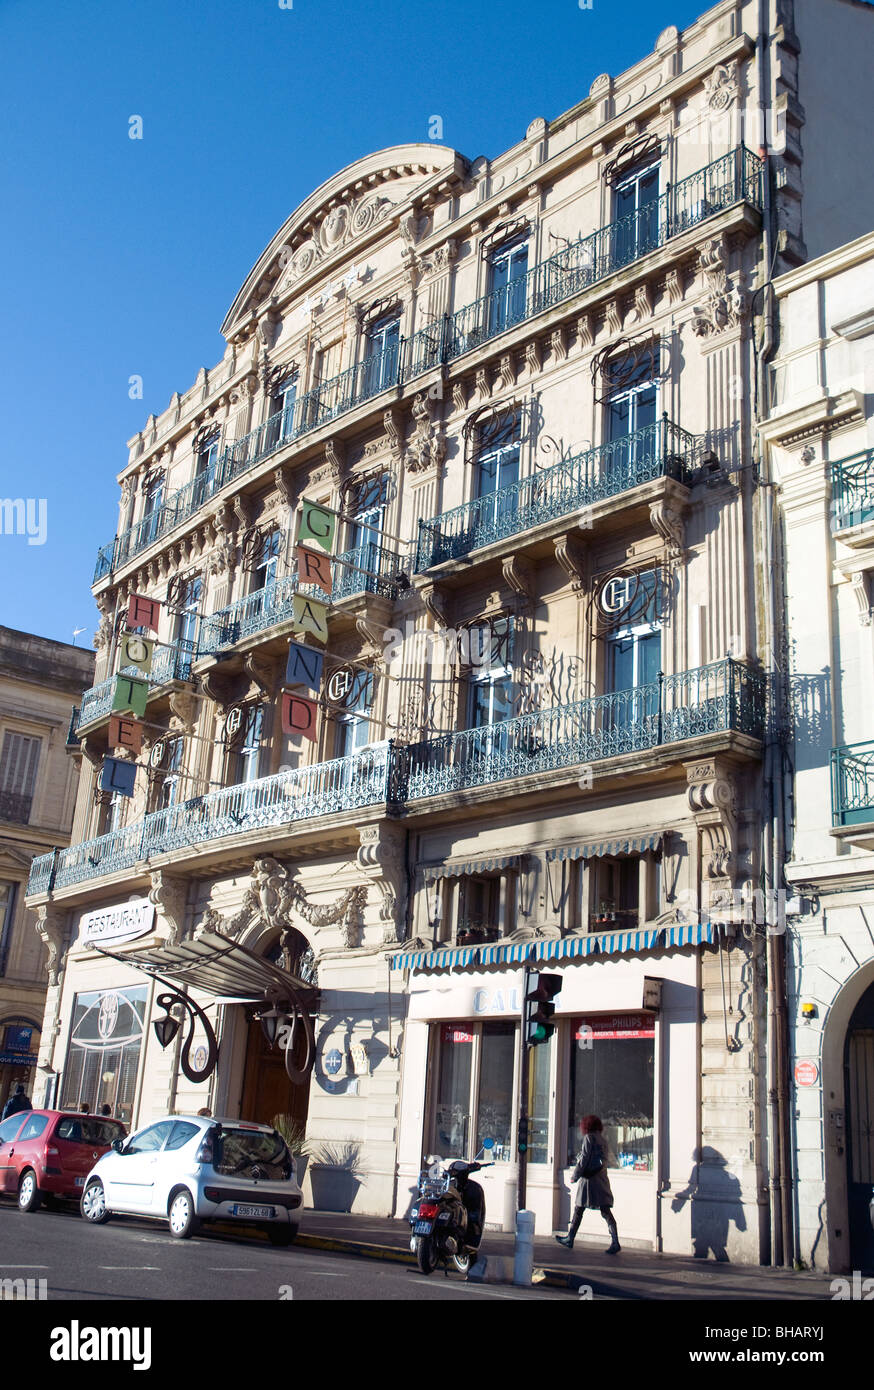 Sète's Grand Hotel con le sue graziose un'architettura del XIX secolo si affaccia su una giunzione di canali nel vecchio centro della città Foto Stock